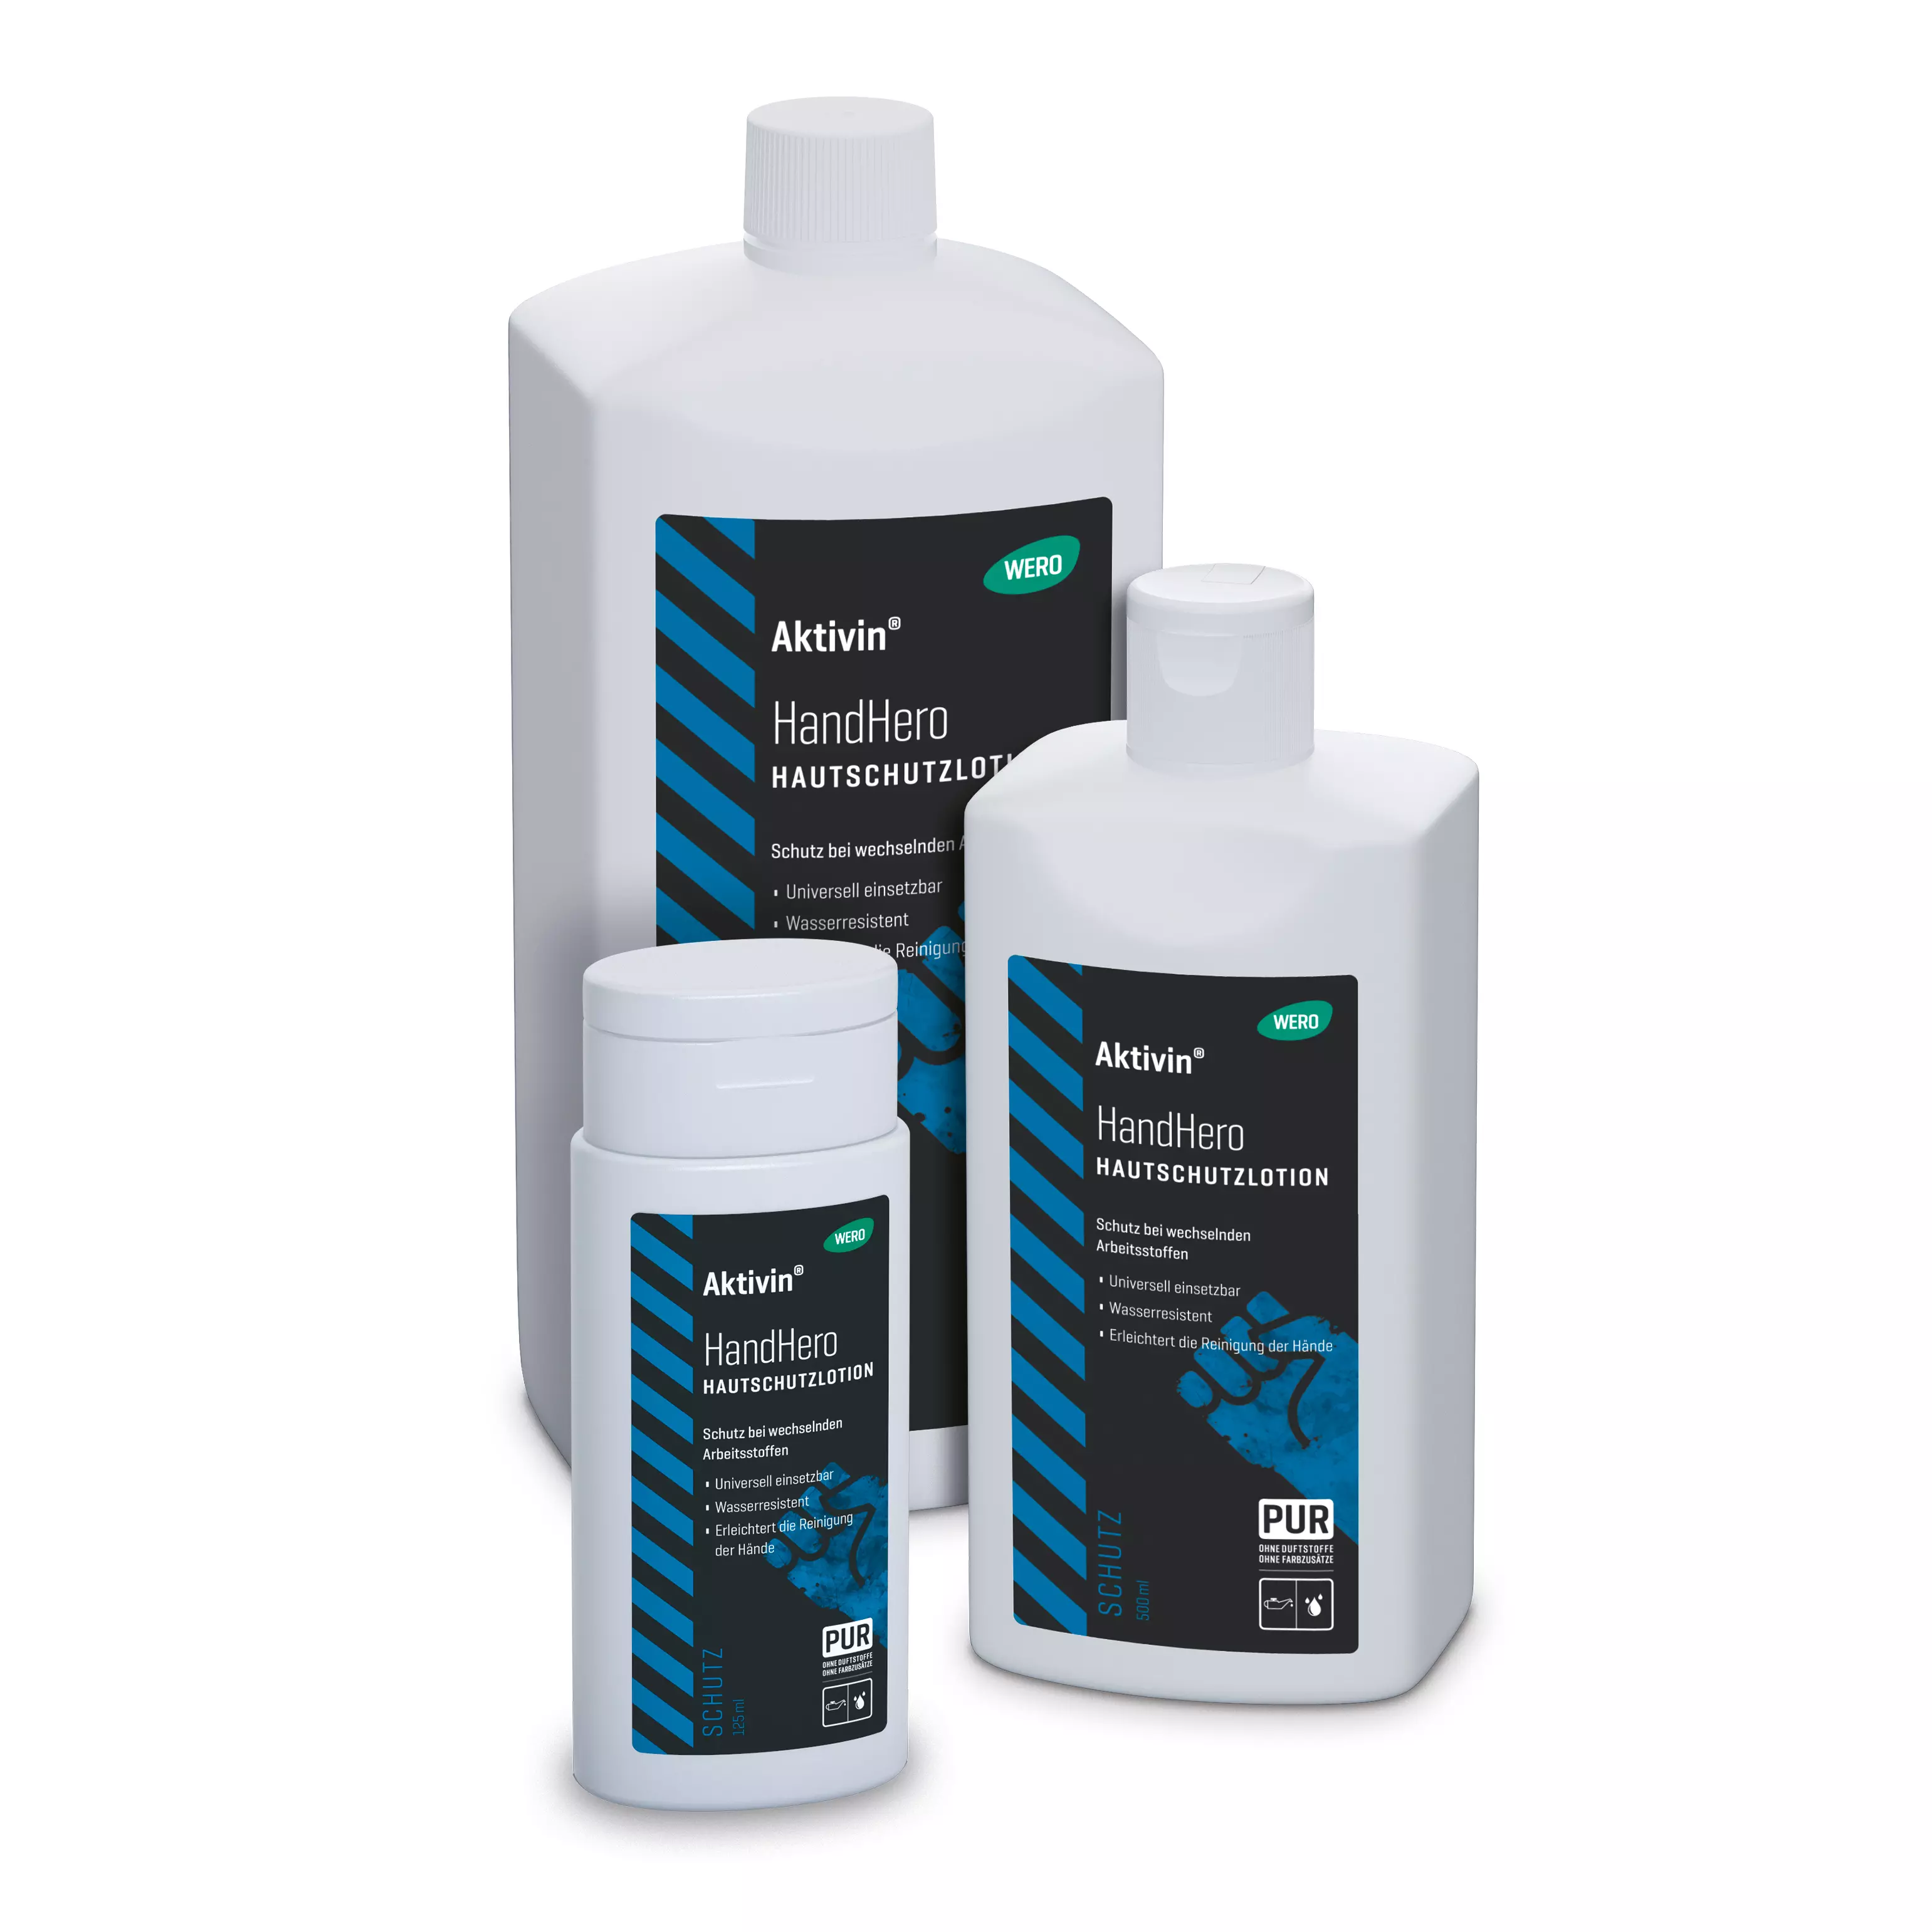 Skin protection lotion Aktivin® HandHero - Euro bottle, 500 ml